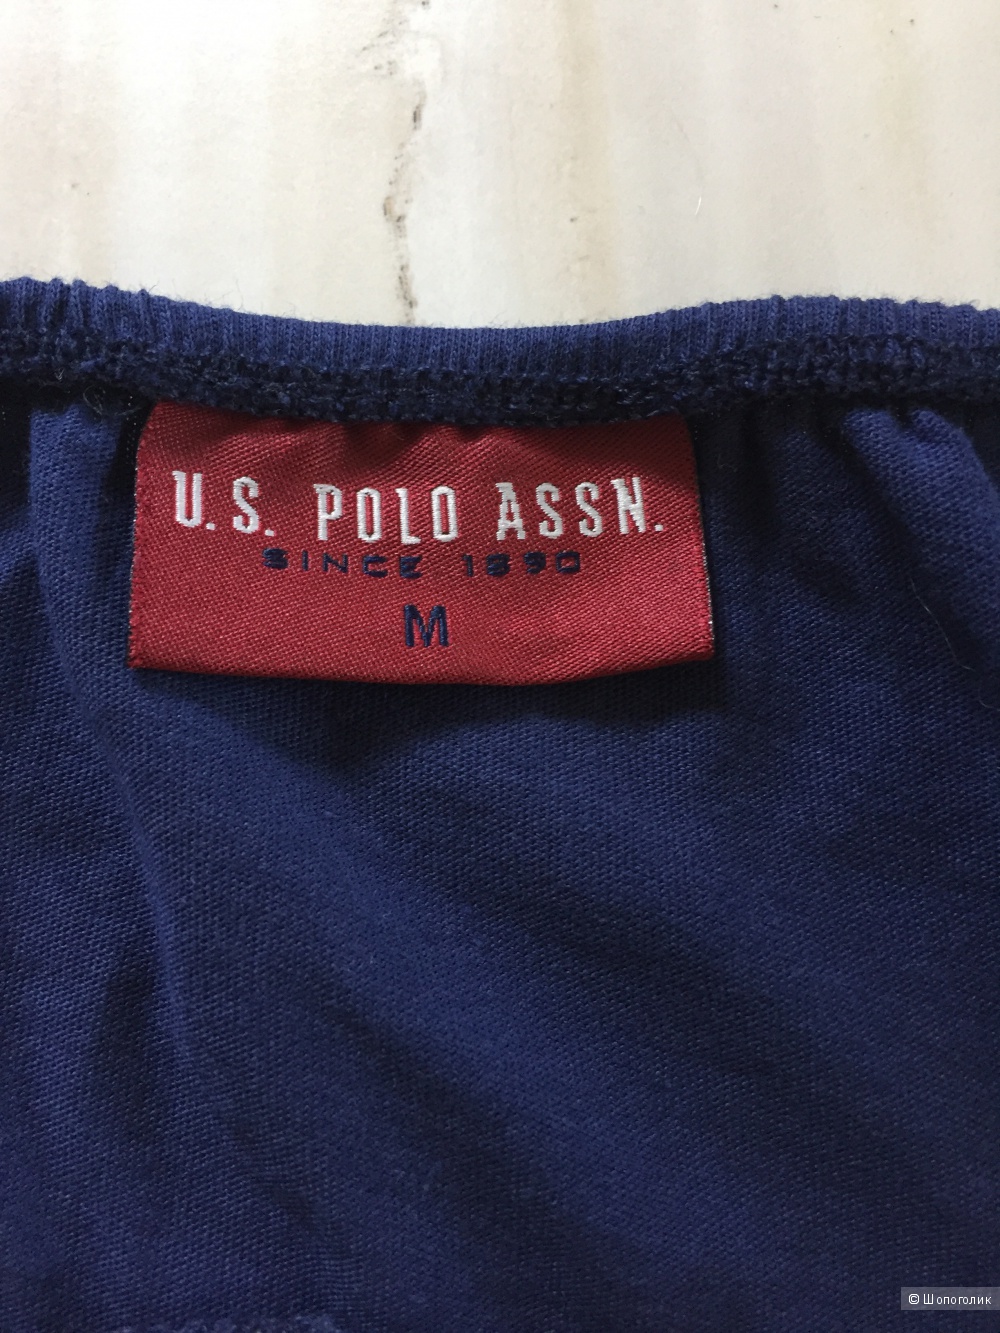 Топик U.S. Polo ASSN синего цвета, размер М